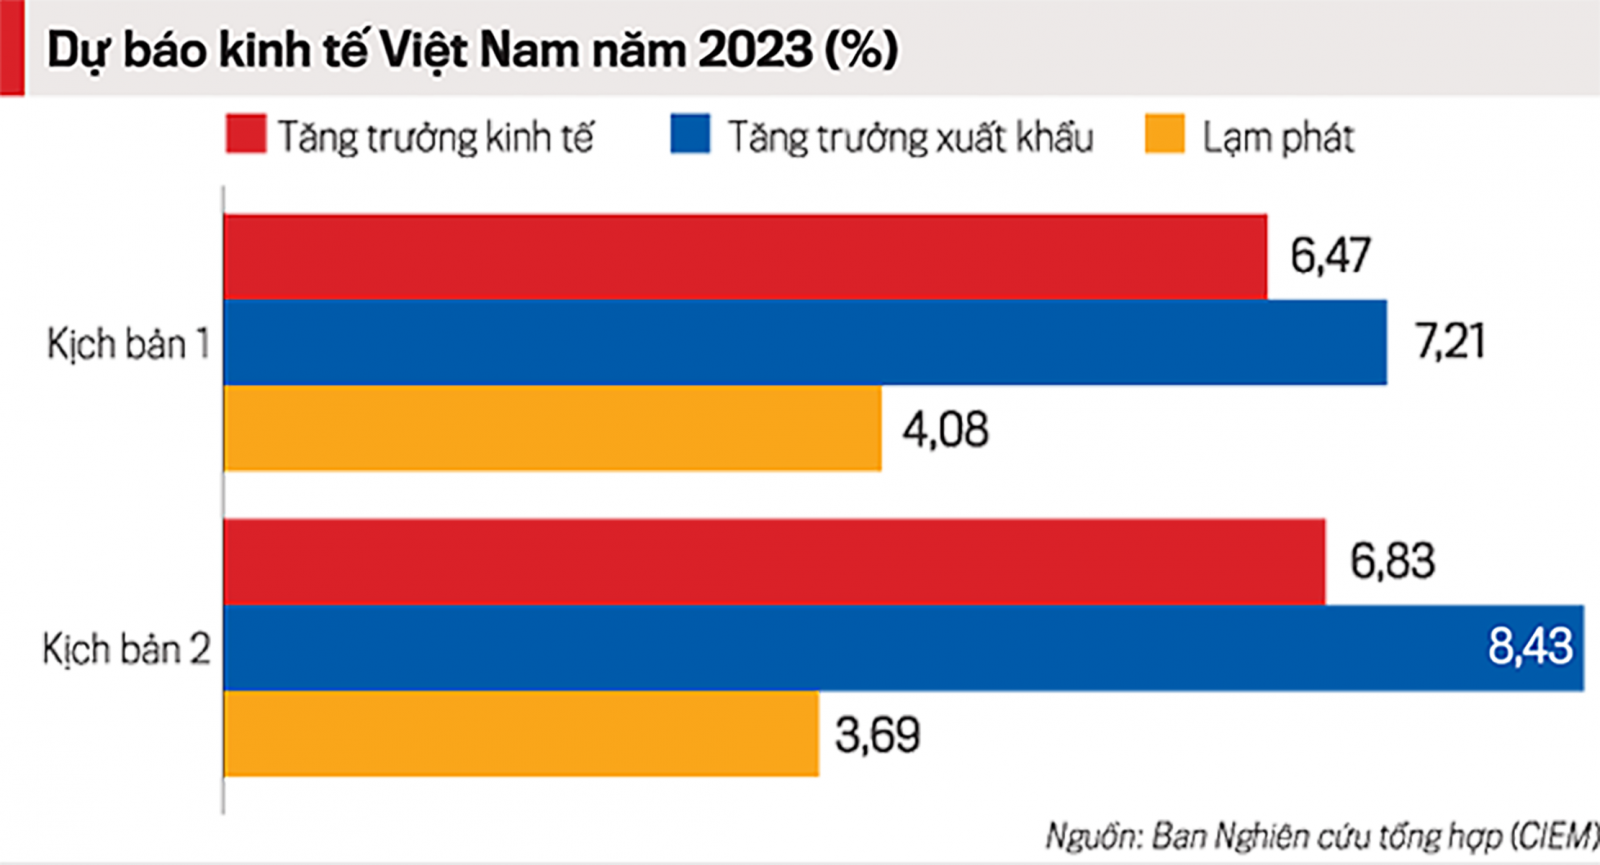  2 kịch bản cập nhật dự báo kinh tế Việt Nam 2023